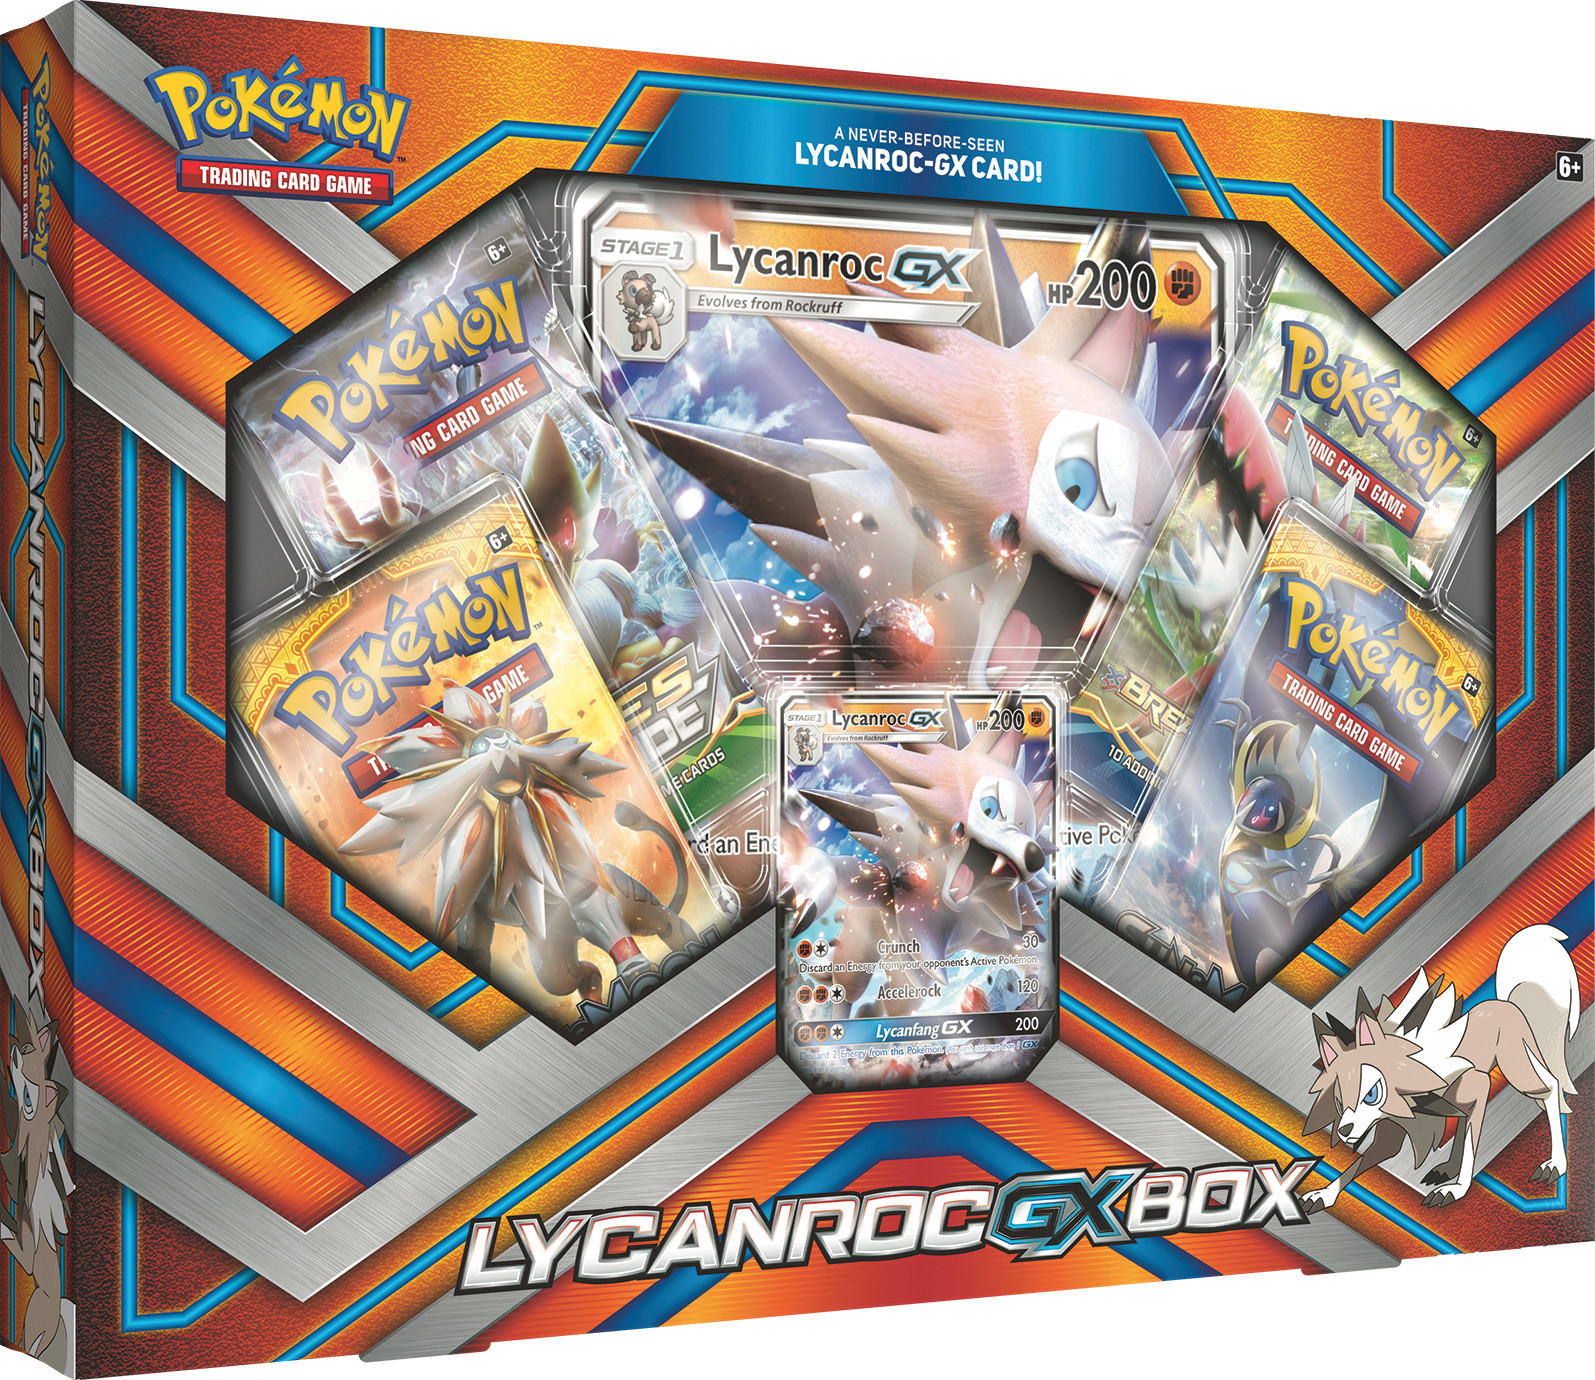 Lycanroc GX Box Pokemon New Pokemon 2B3 